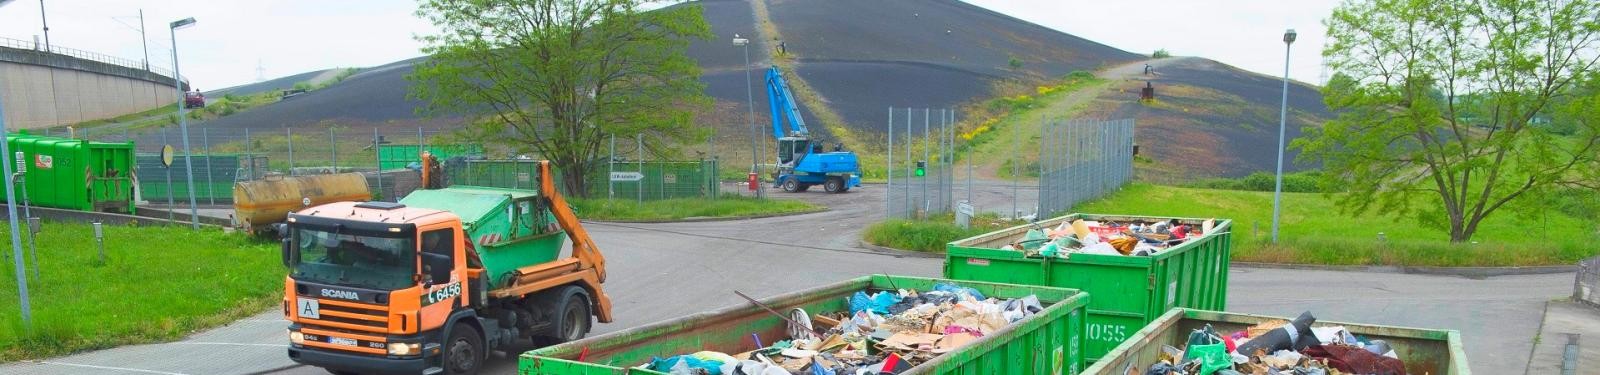 Ein Müllfahrzeug steht auf dem Betriebsgelände einer Deponie, im Vordergrund ein voller Container